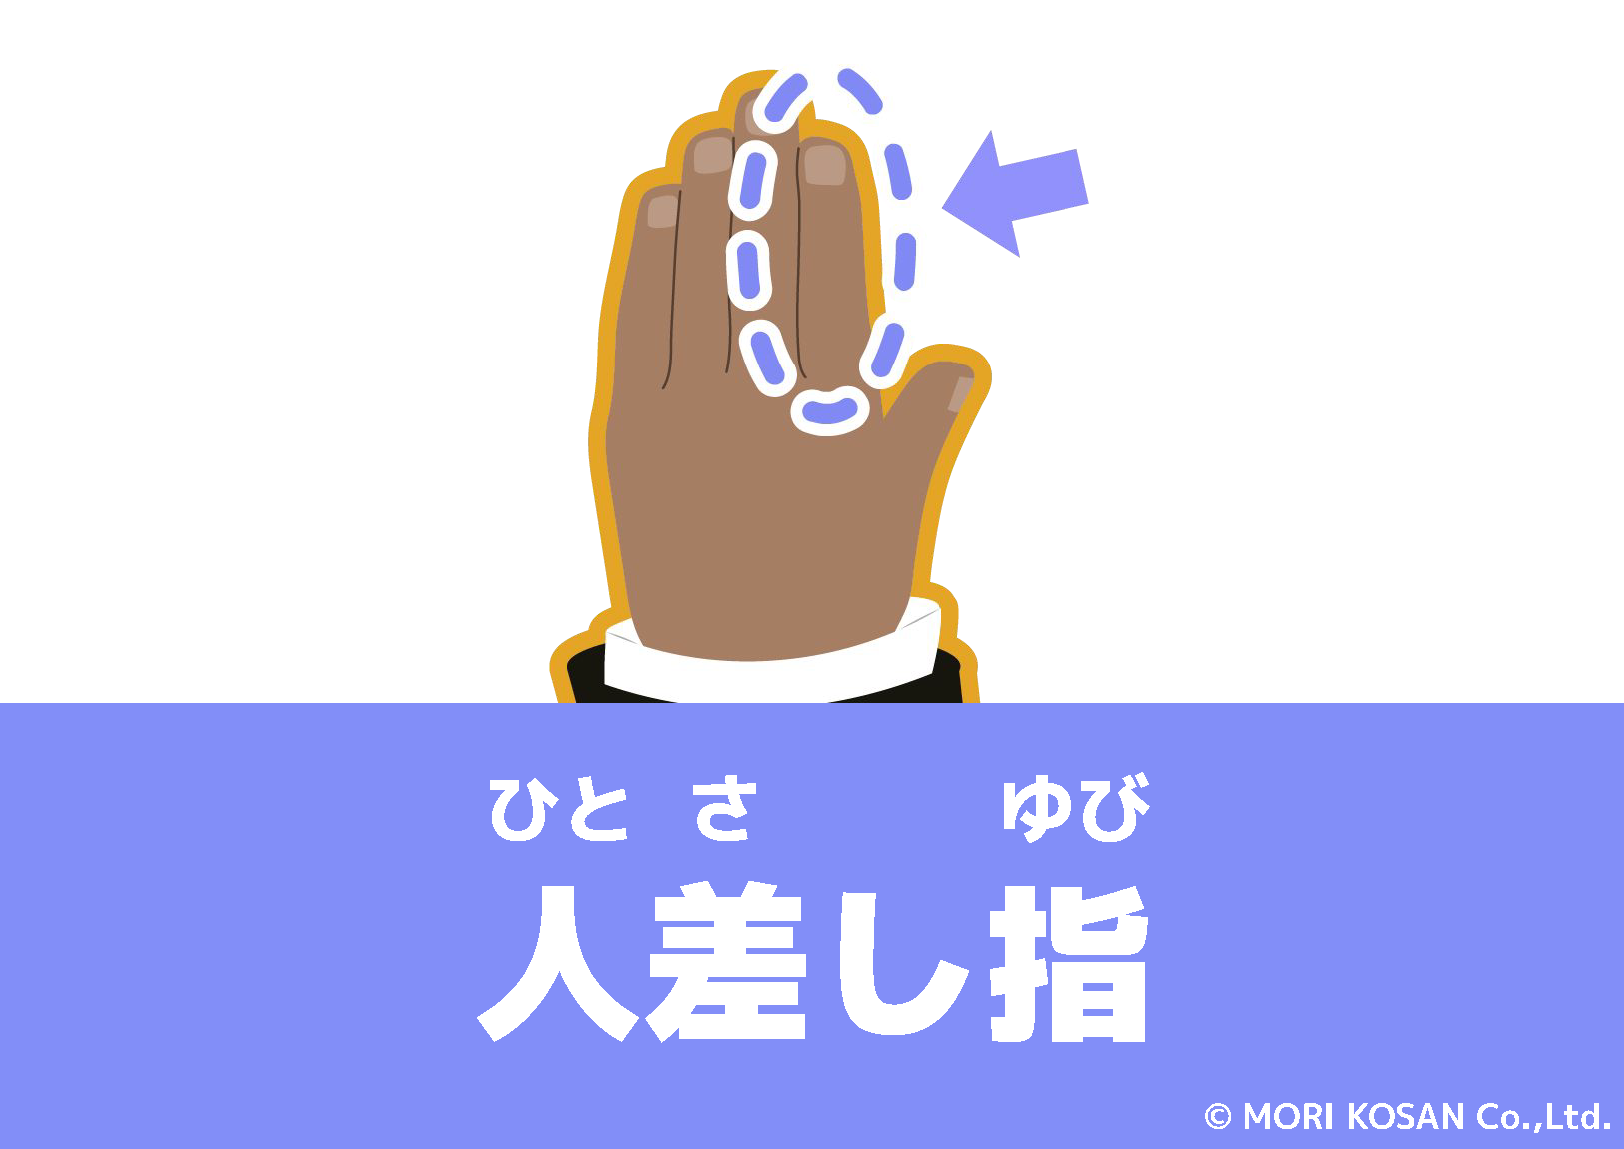 【WA.100】今日の日本語「人差し指」